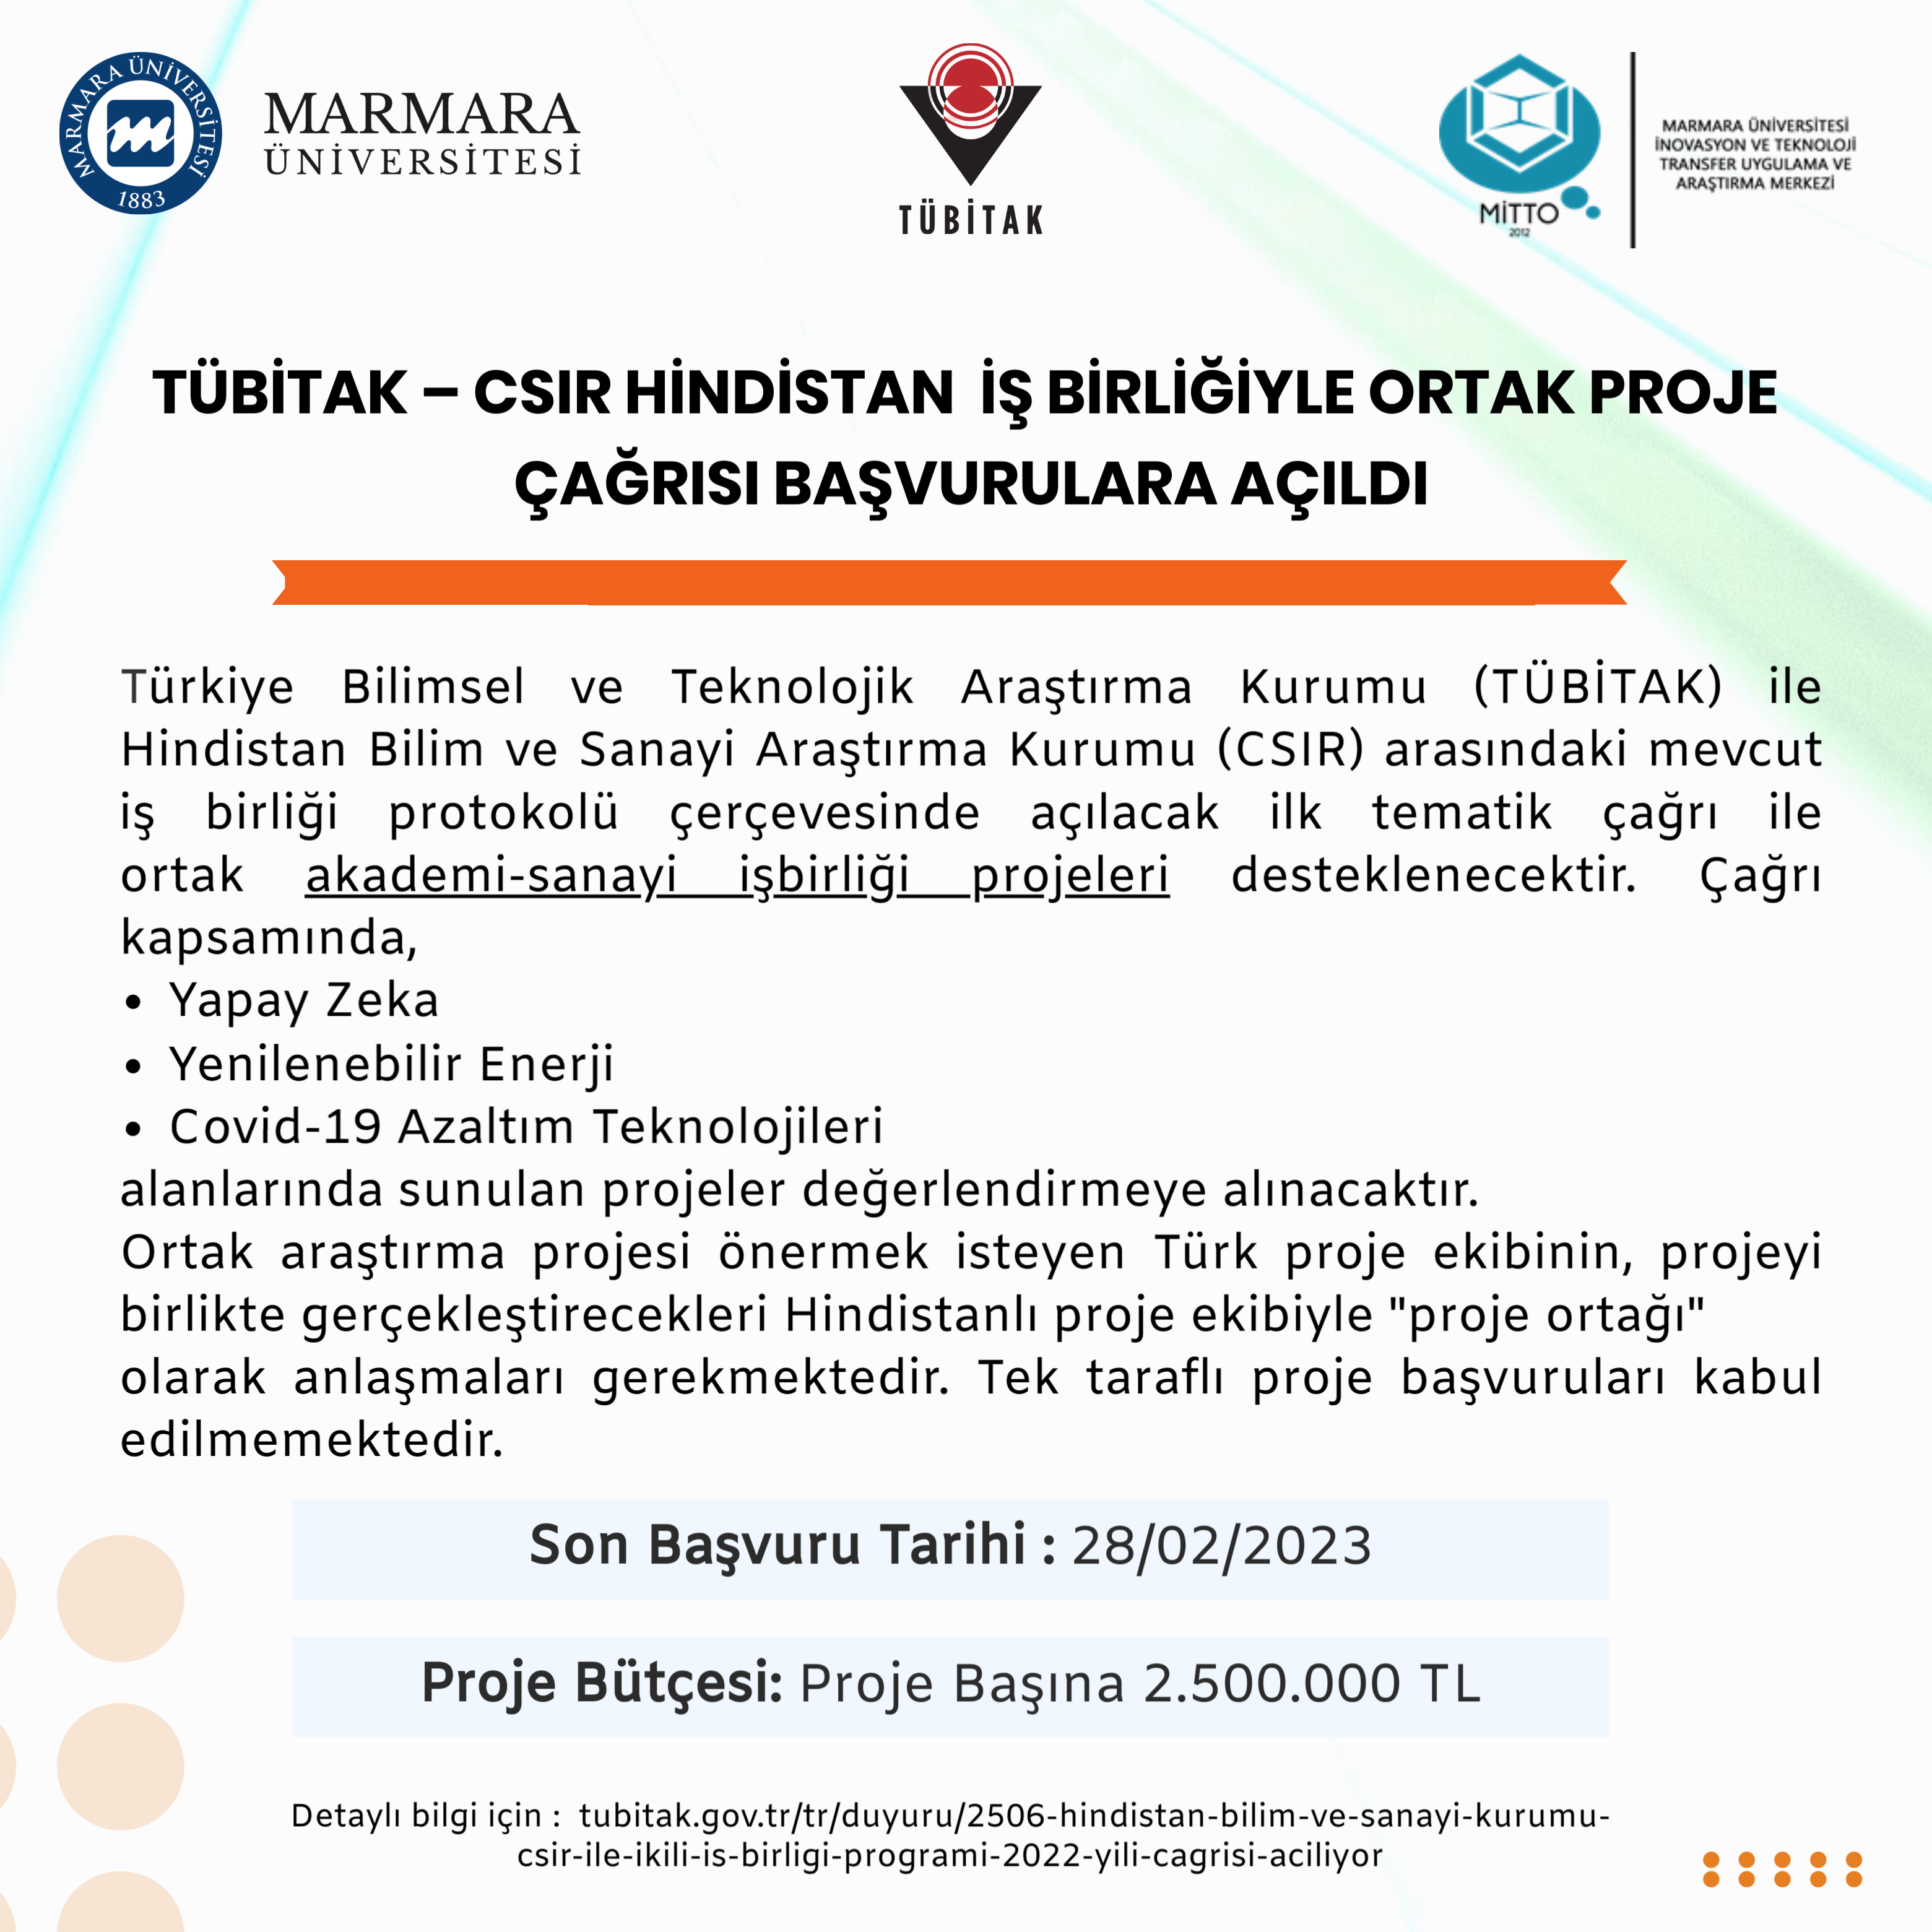 Tubitak-2506-CSIR.png (1.52 MB)